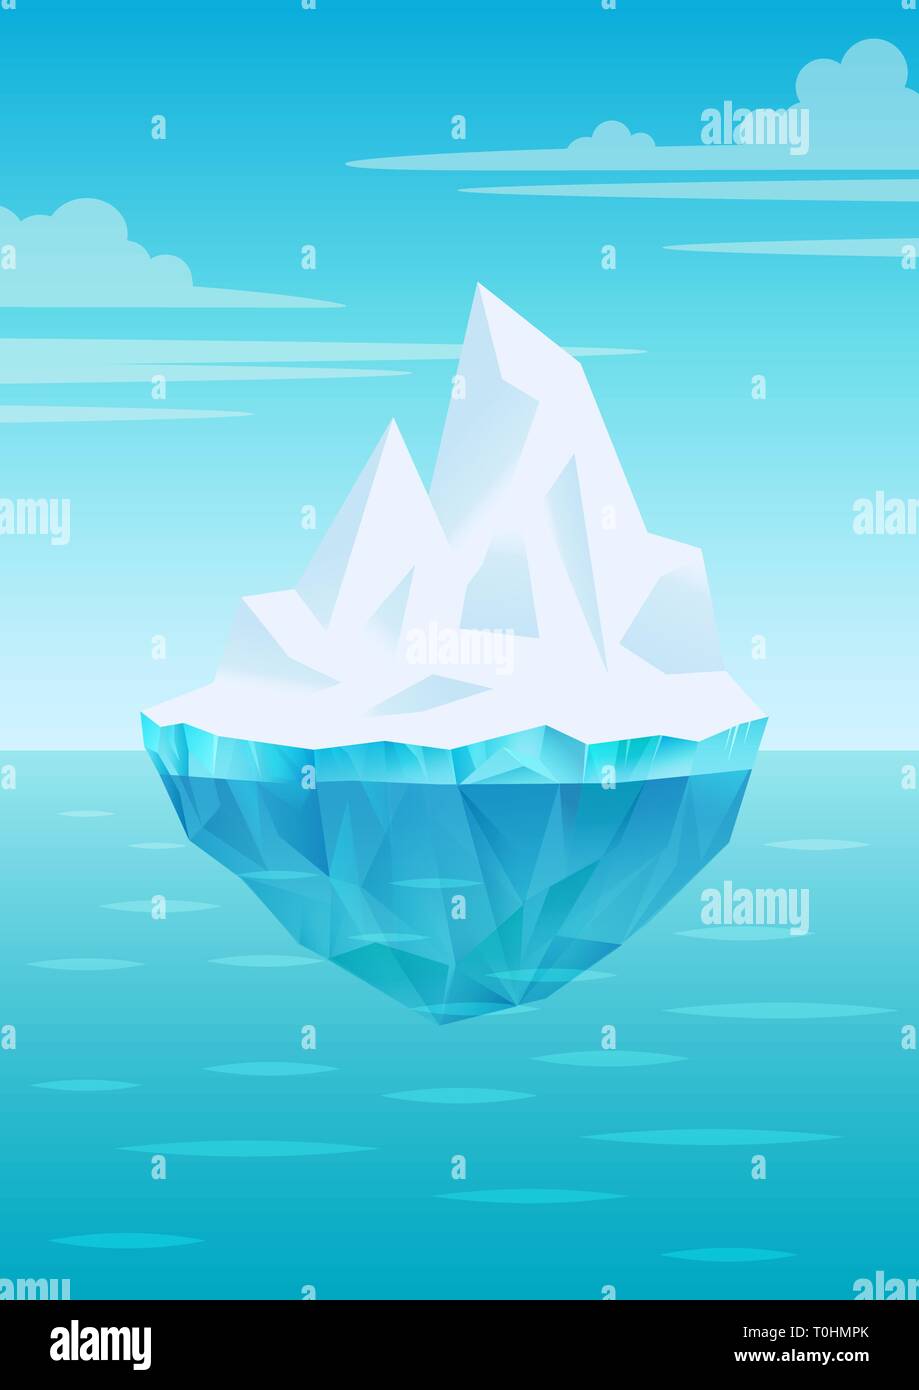 Iceberg galleggiante sull'acqua onde con parte subacquea, luminoso cielo blu con nuvole, il ghiaccio di acqua dolce, il ghiacciaio o ice shelf pezzo, vettore Illustrazione Vettoriale